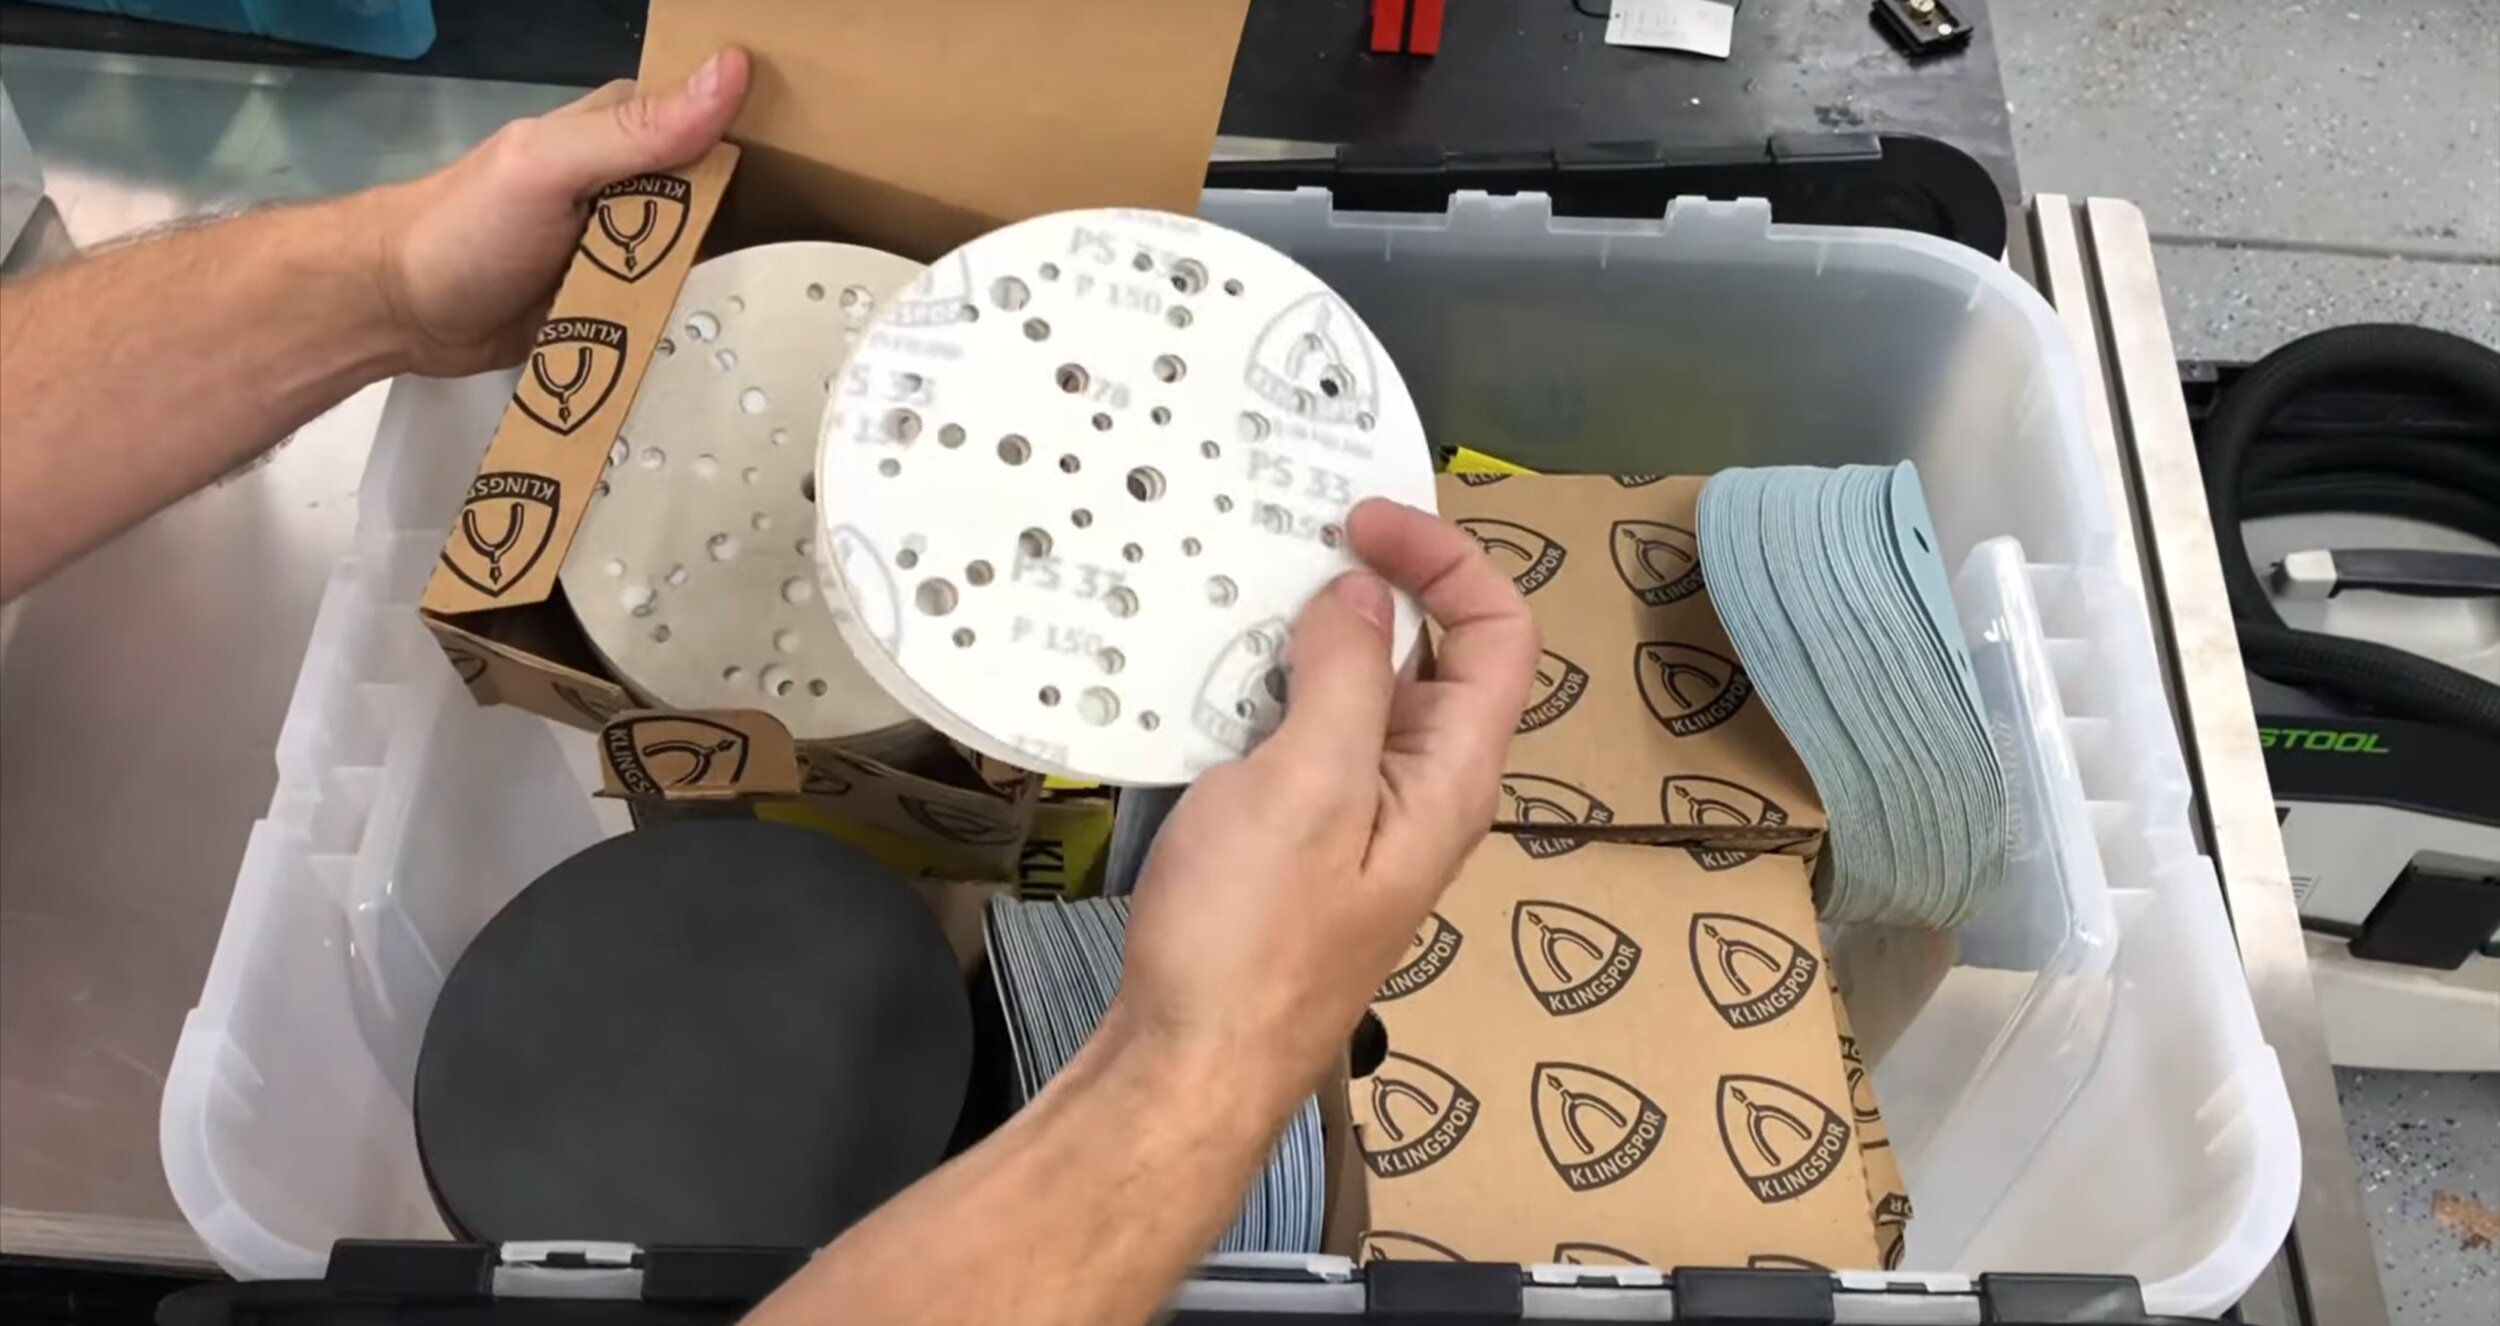 DIY Sandpaper Storage Organizer 